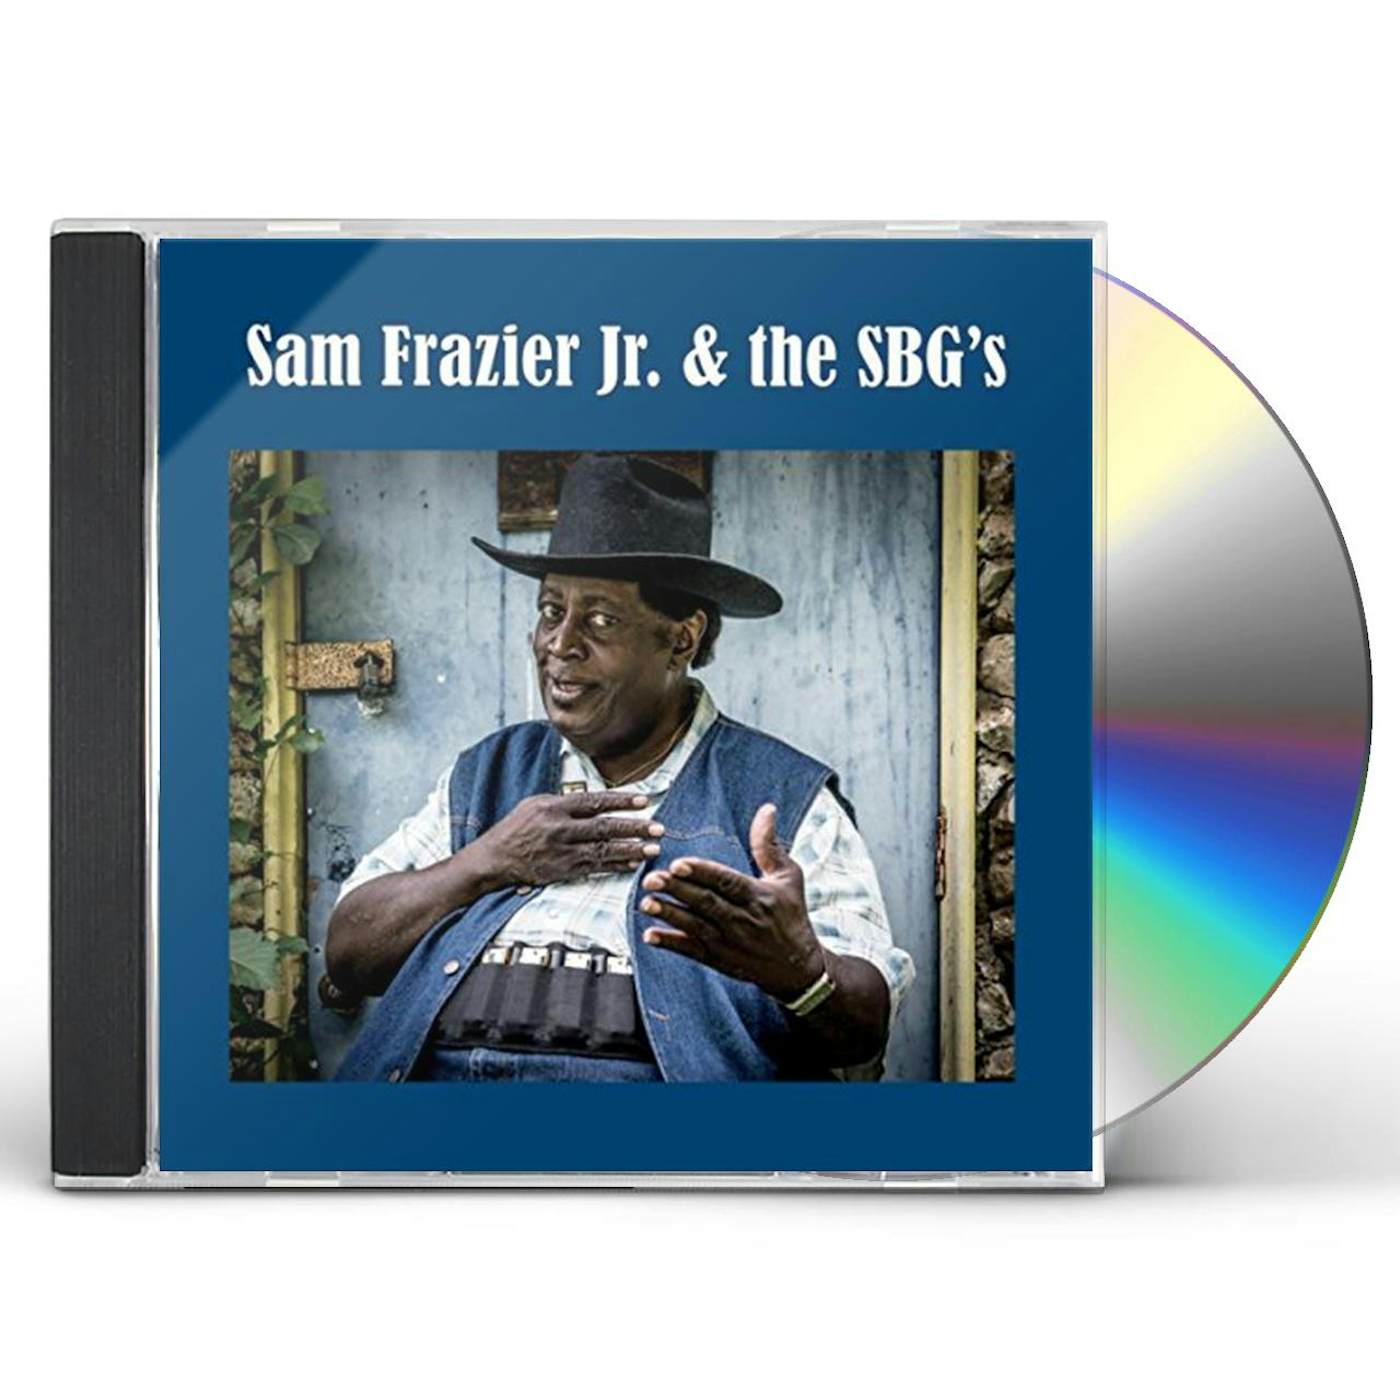 Sam Frazier, Jr. & THE SBG'S CD